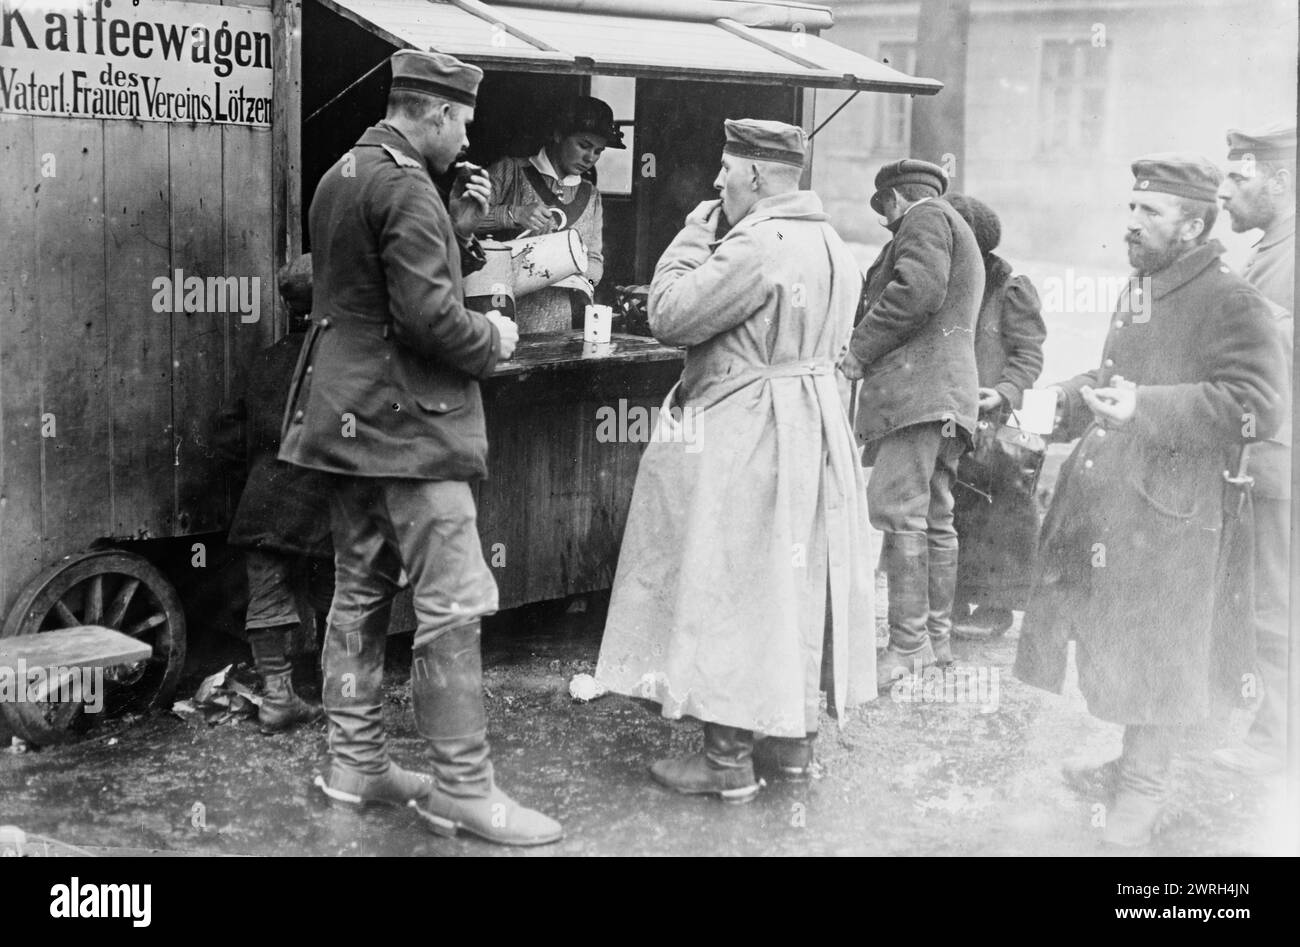 Wagon à café gratuit, Lotzen, entre c1910 et c1915. Soldats dans un wagon à café à Lotzen, Prusse orientale, (aujourd'hui Gizycko, Pologne) pendant la première Guerre mondiale Banque D'Images